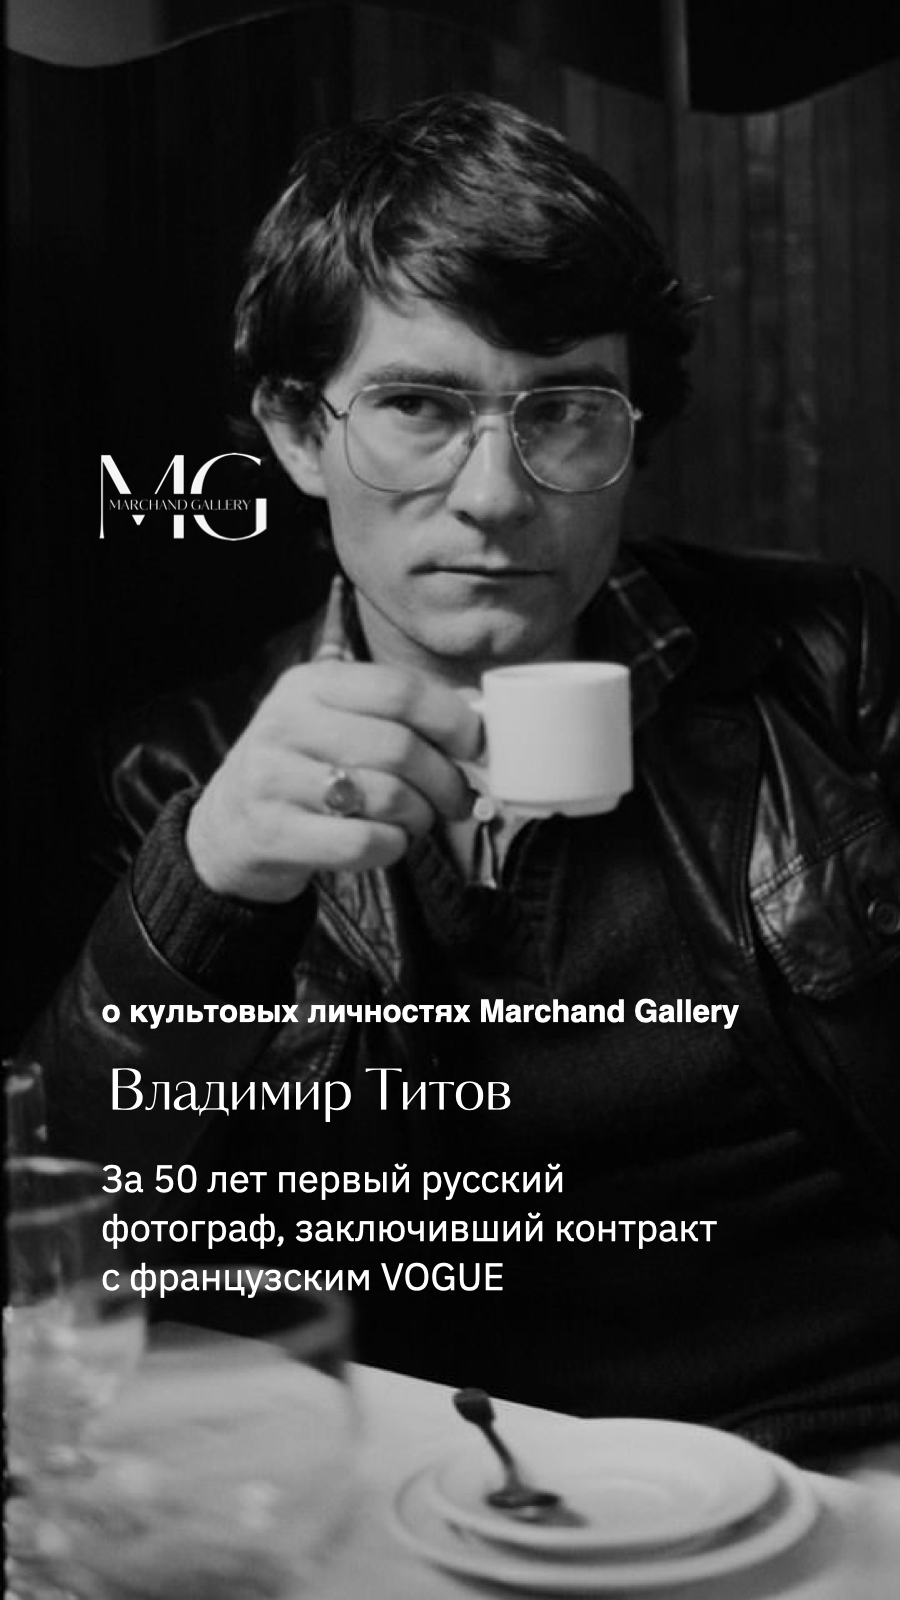 Самый печатаемый фотограф 1980 года в мире и его работы!
 #shorts #владимирсычев #охудожниках